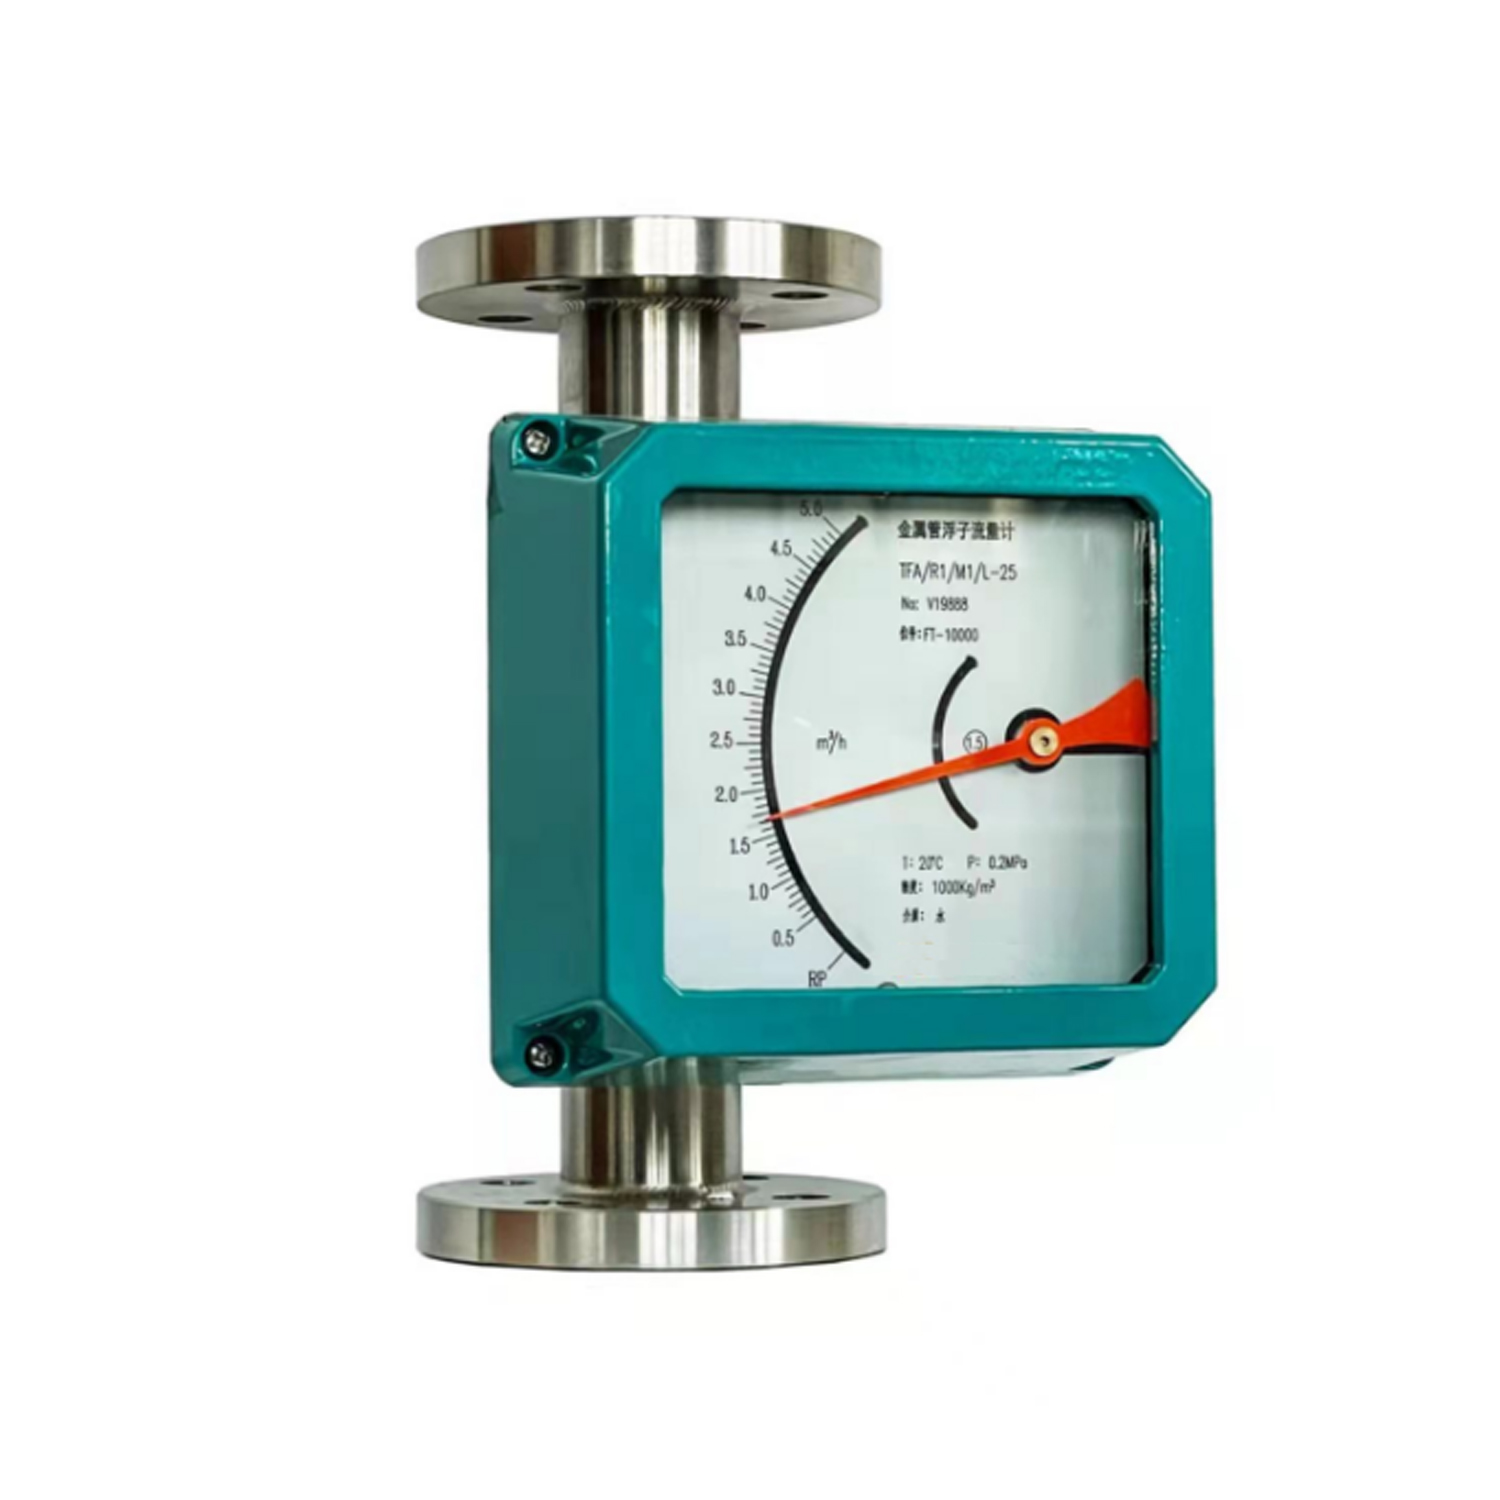 HFM400 Metallic Rotor Flowmeter